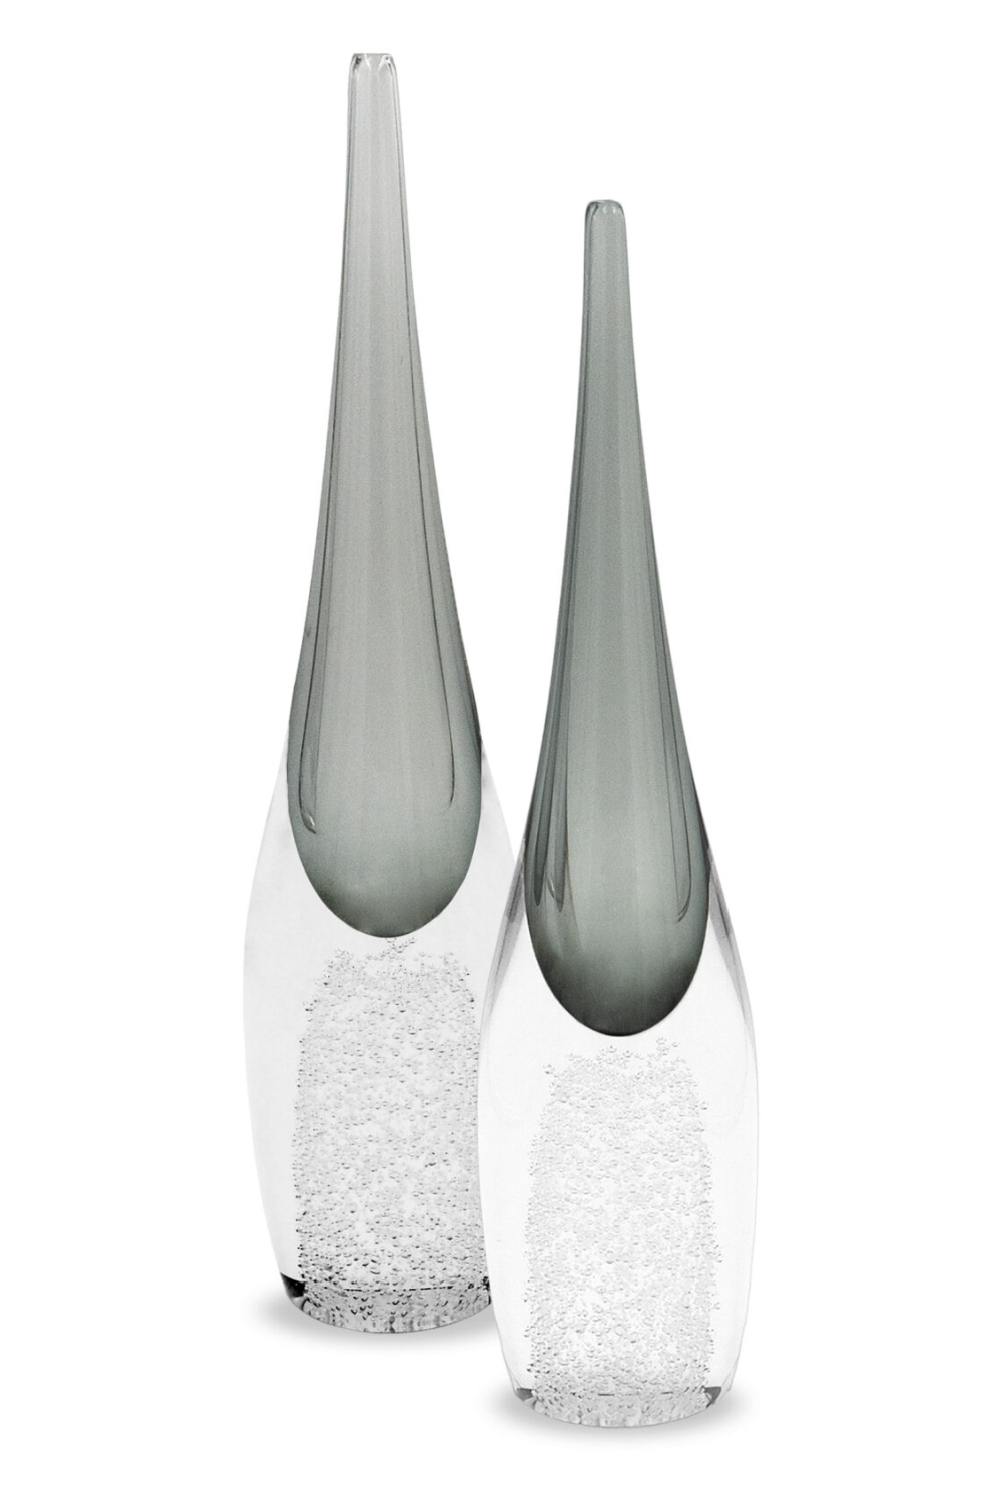 Gray Crystal Vase | Liang & Eimil Ellis | Oroa.com